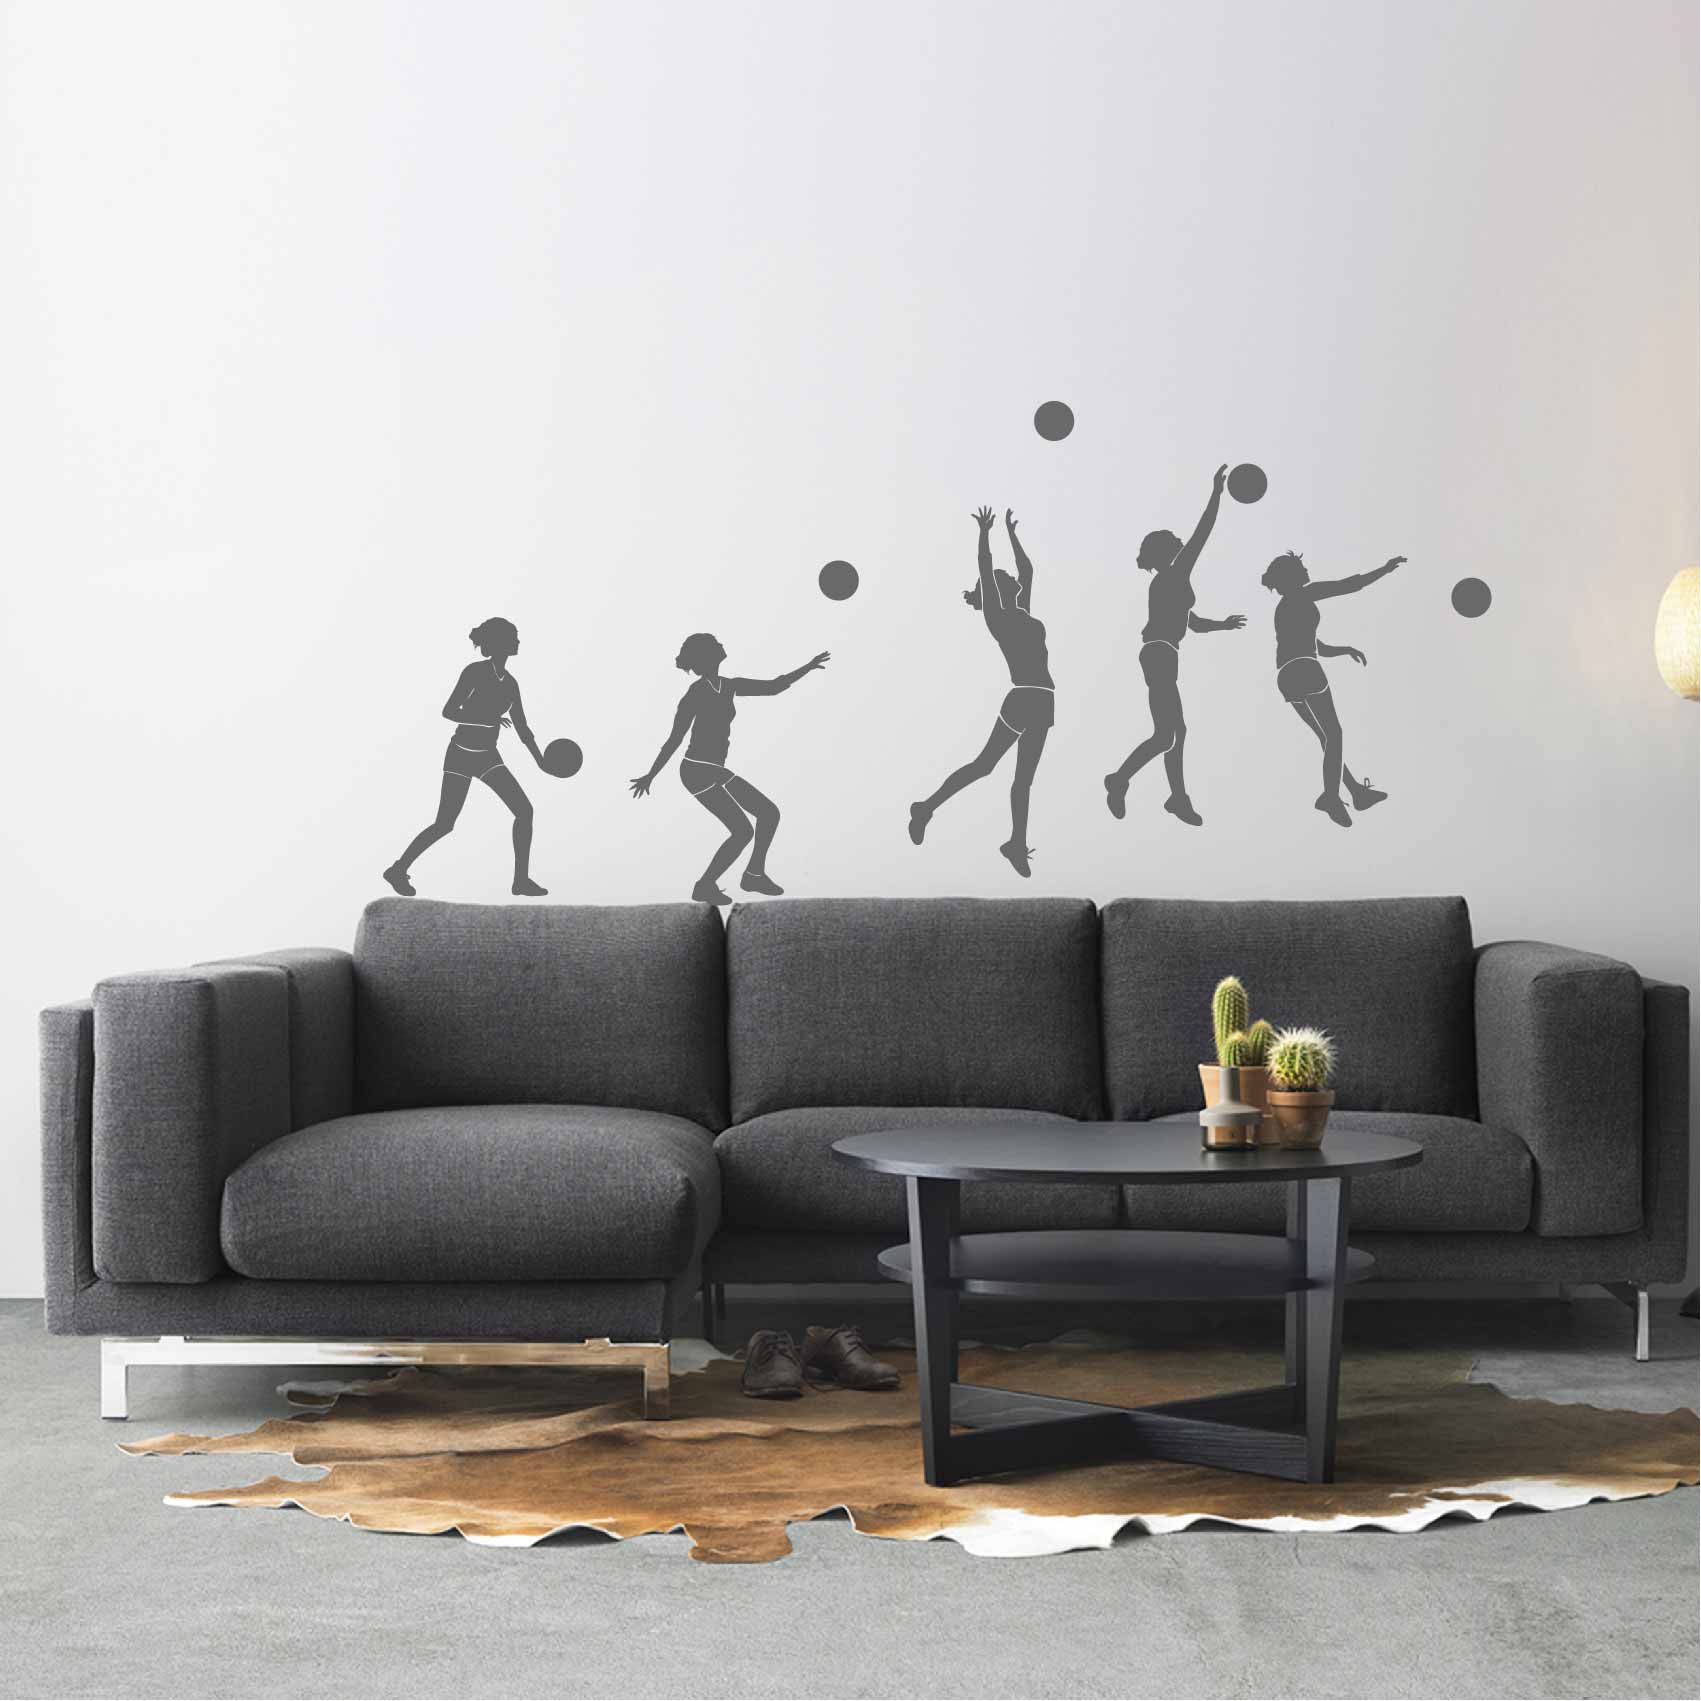 stickers-volleyball-service-ref22silhouette-stickers-muraux-silhouette-autocollant-chambre-salon-sticker-mural-ombre